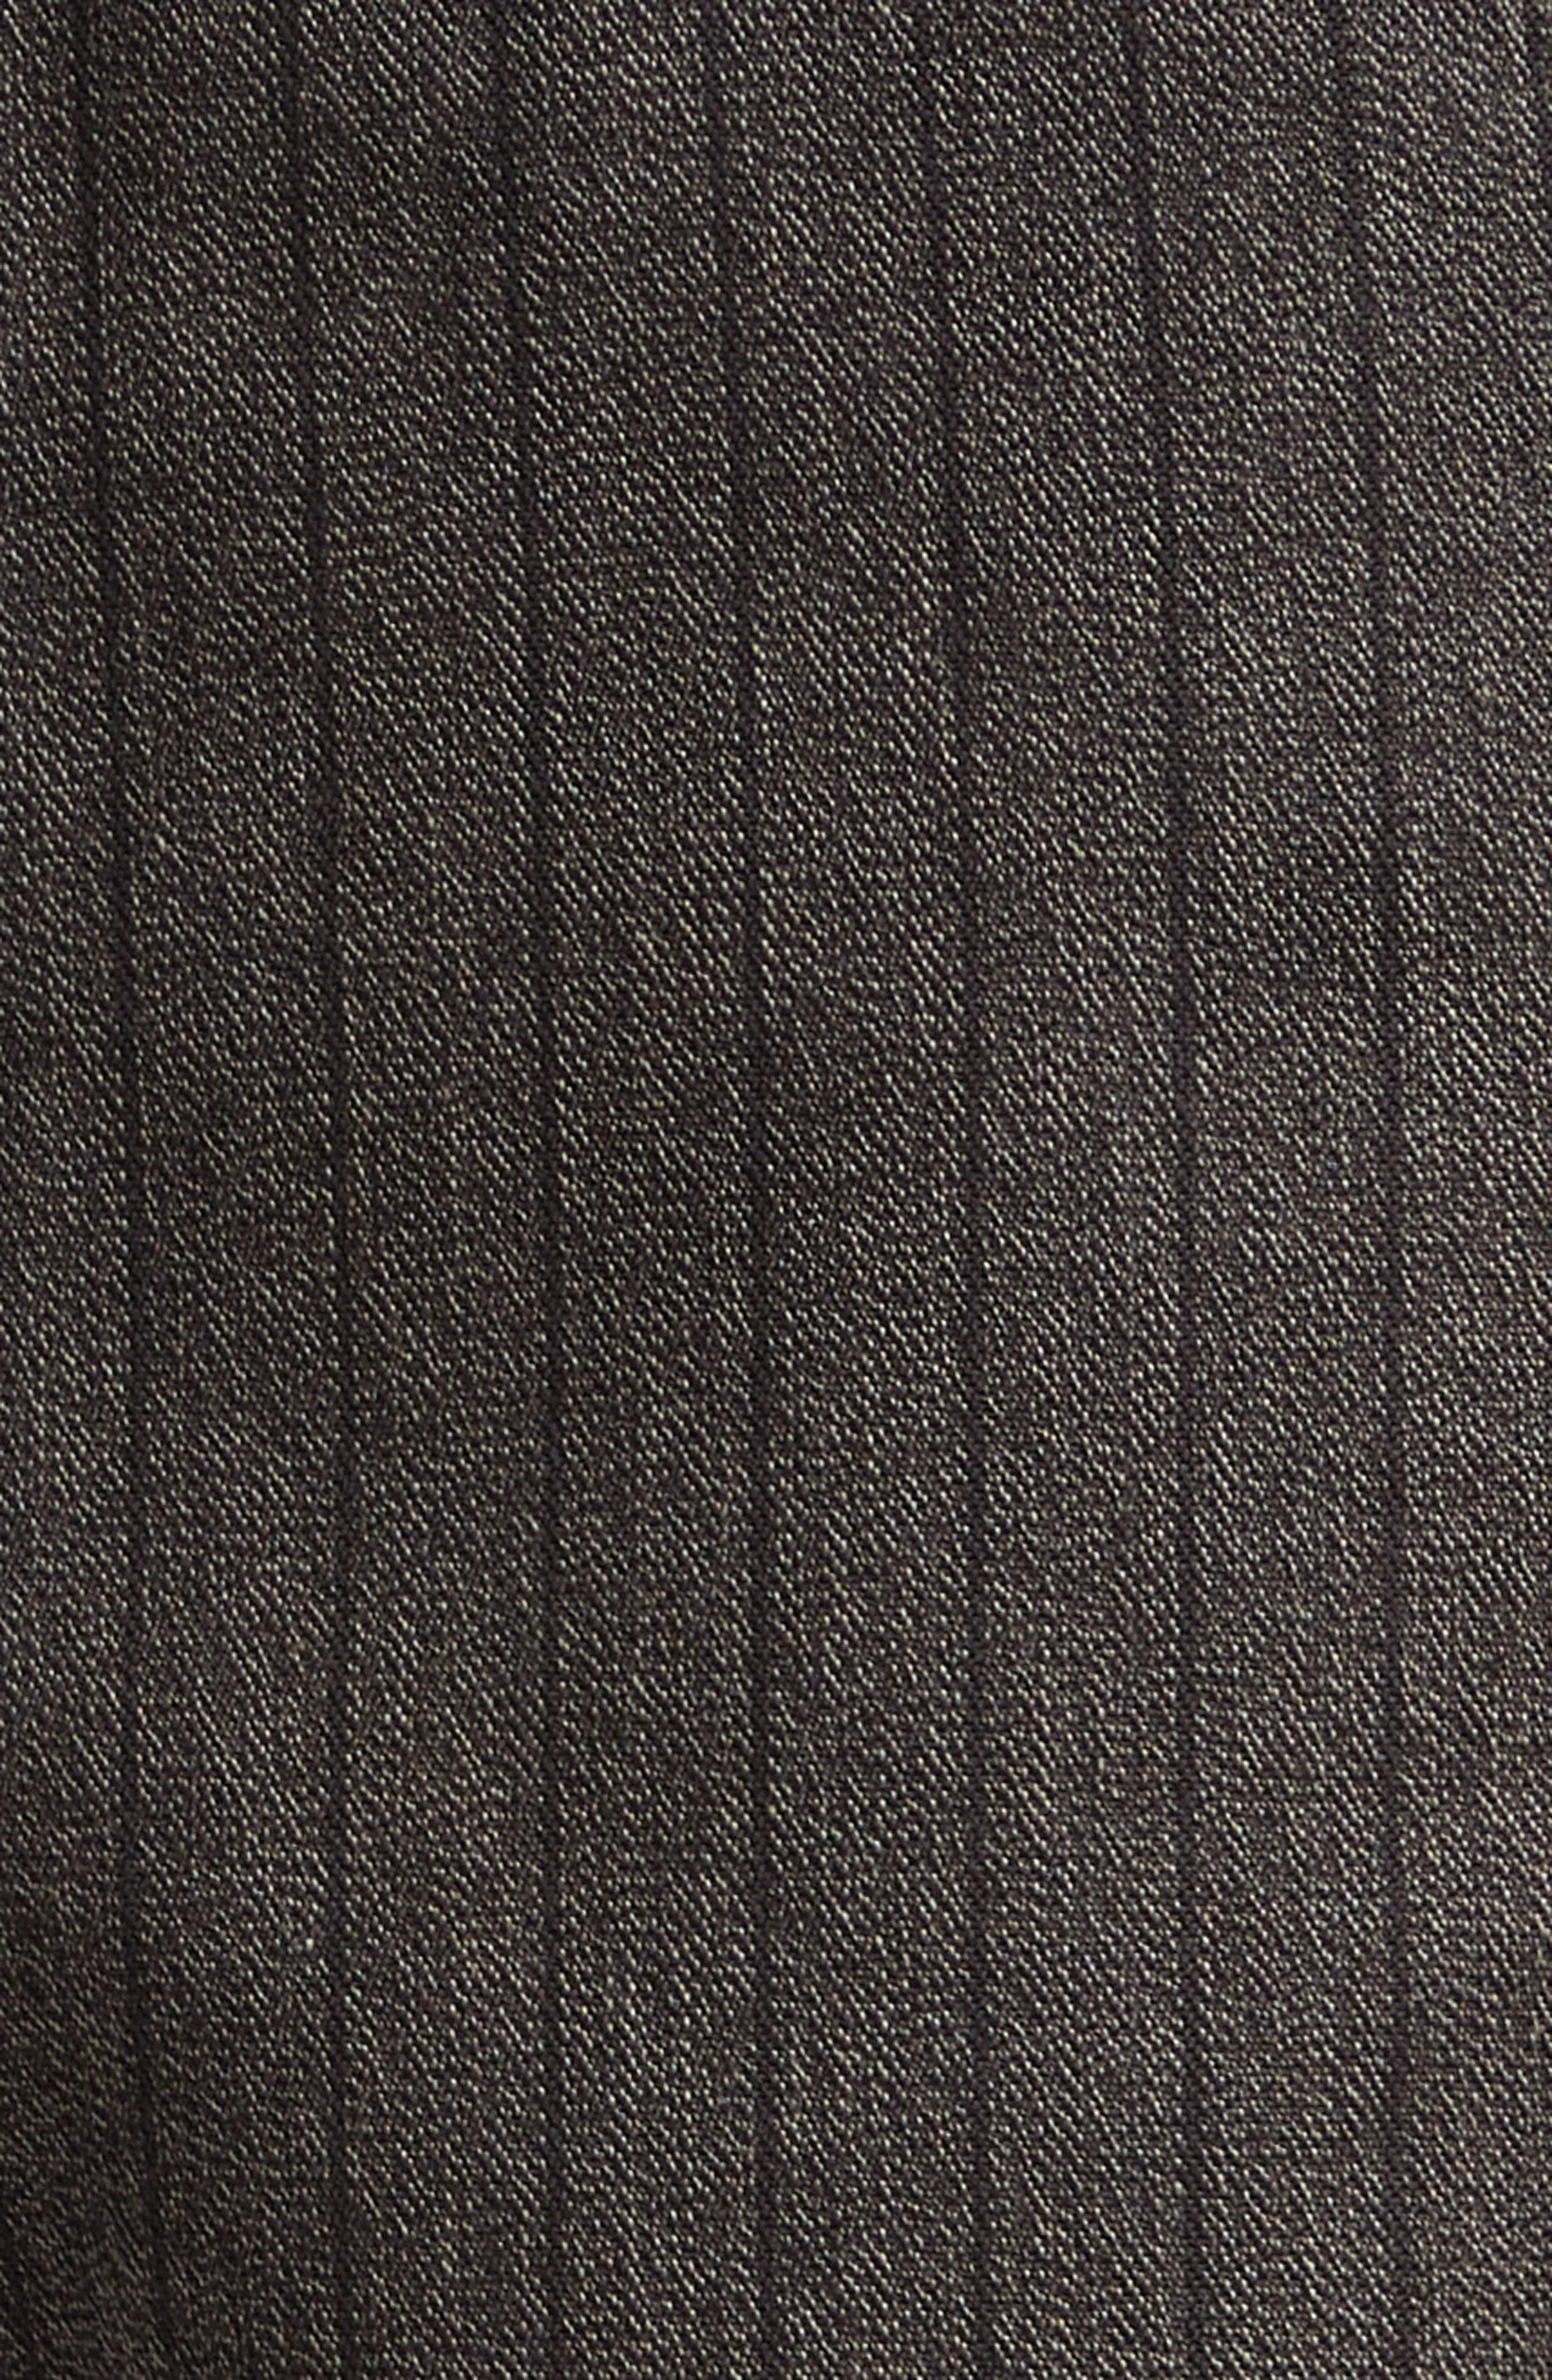 Stripe Jaspé Twill Field Pants in Brown/Black - 7